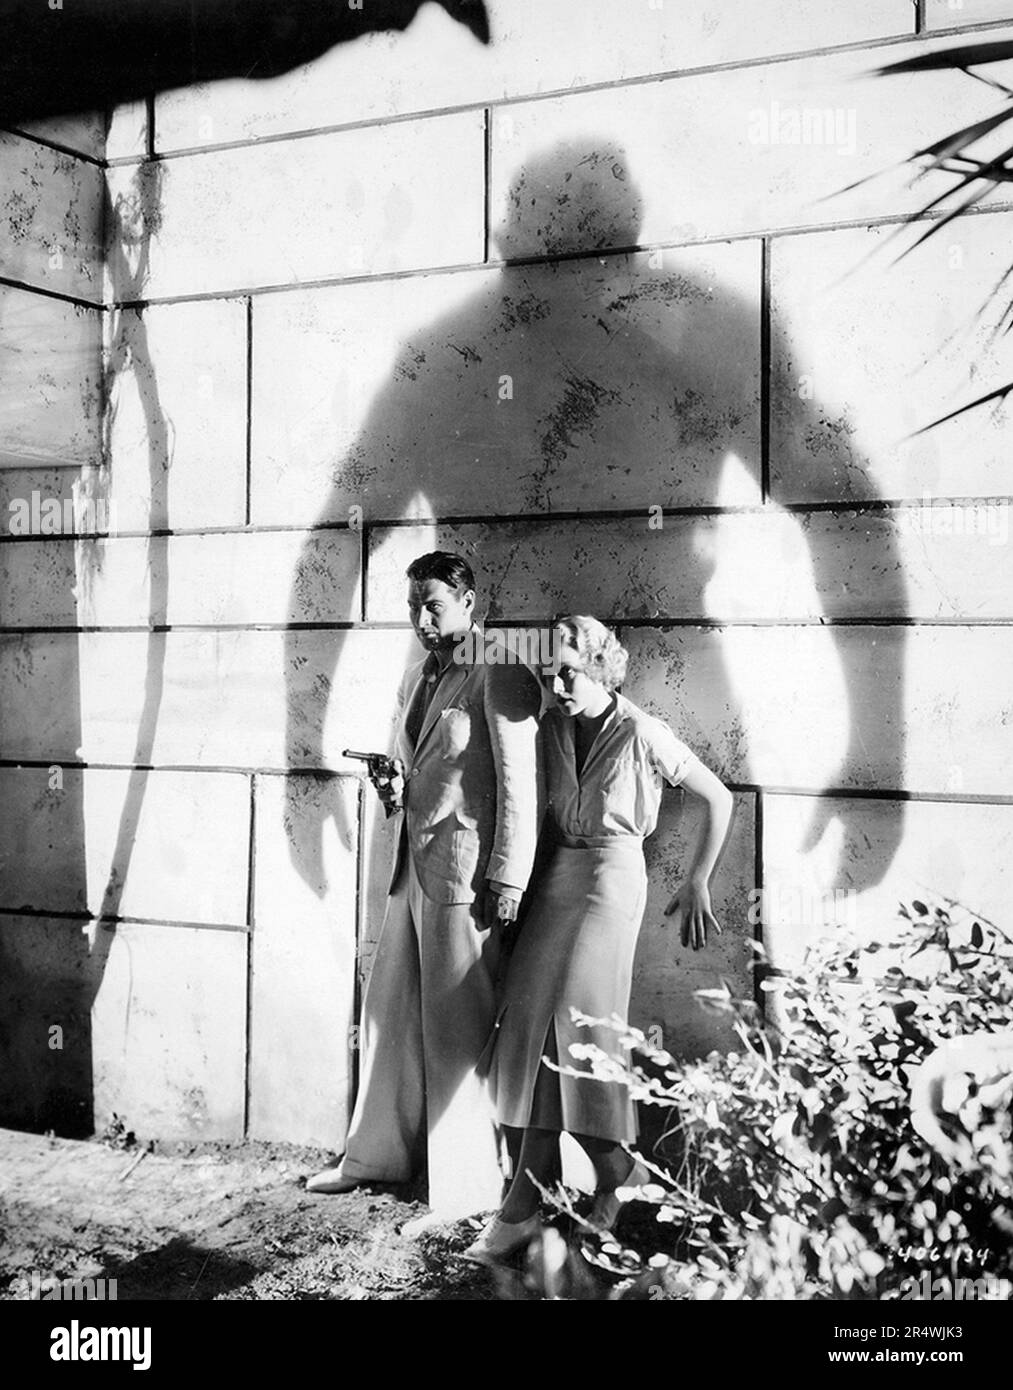 Island of Lost Souls est un américain de science-fiction 1932 horror film avec Charles Laughton, Richard Arlen, Leila Hyams et Bela Lugosi. Le film a été la première adaptation cinématographique de H. G. Wells' roman l'Île du Docteur Moreau, publié en 1896. À la fois livre et film sont sur un scientifique qui est secrètement des expériences chirurgicales sur les animaux sur une île isolée. Banque D'Images